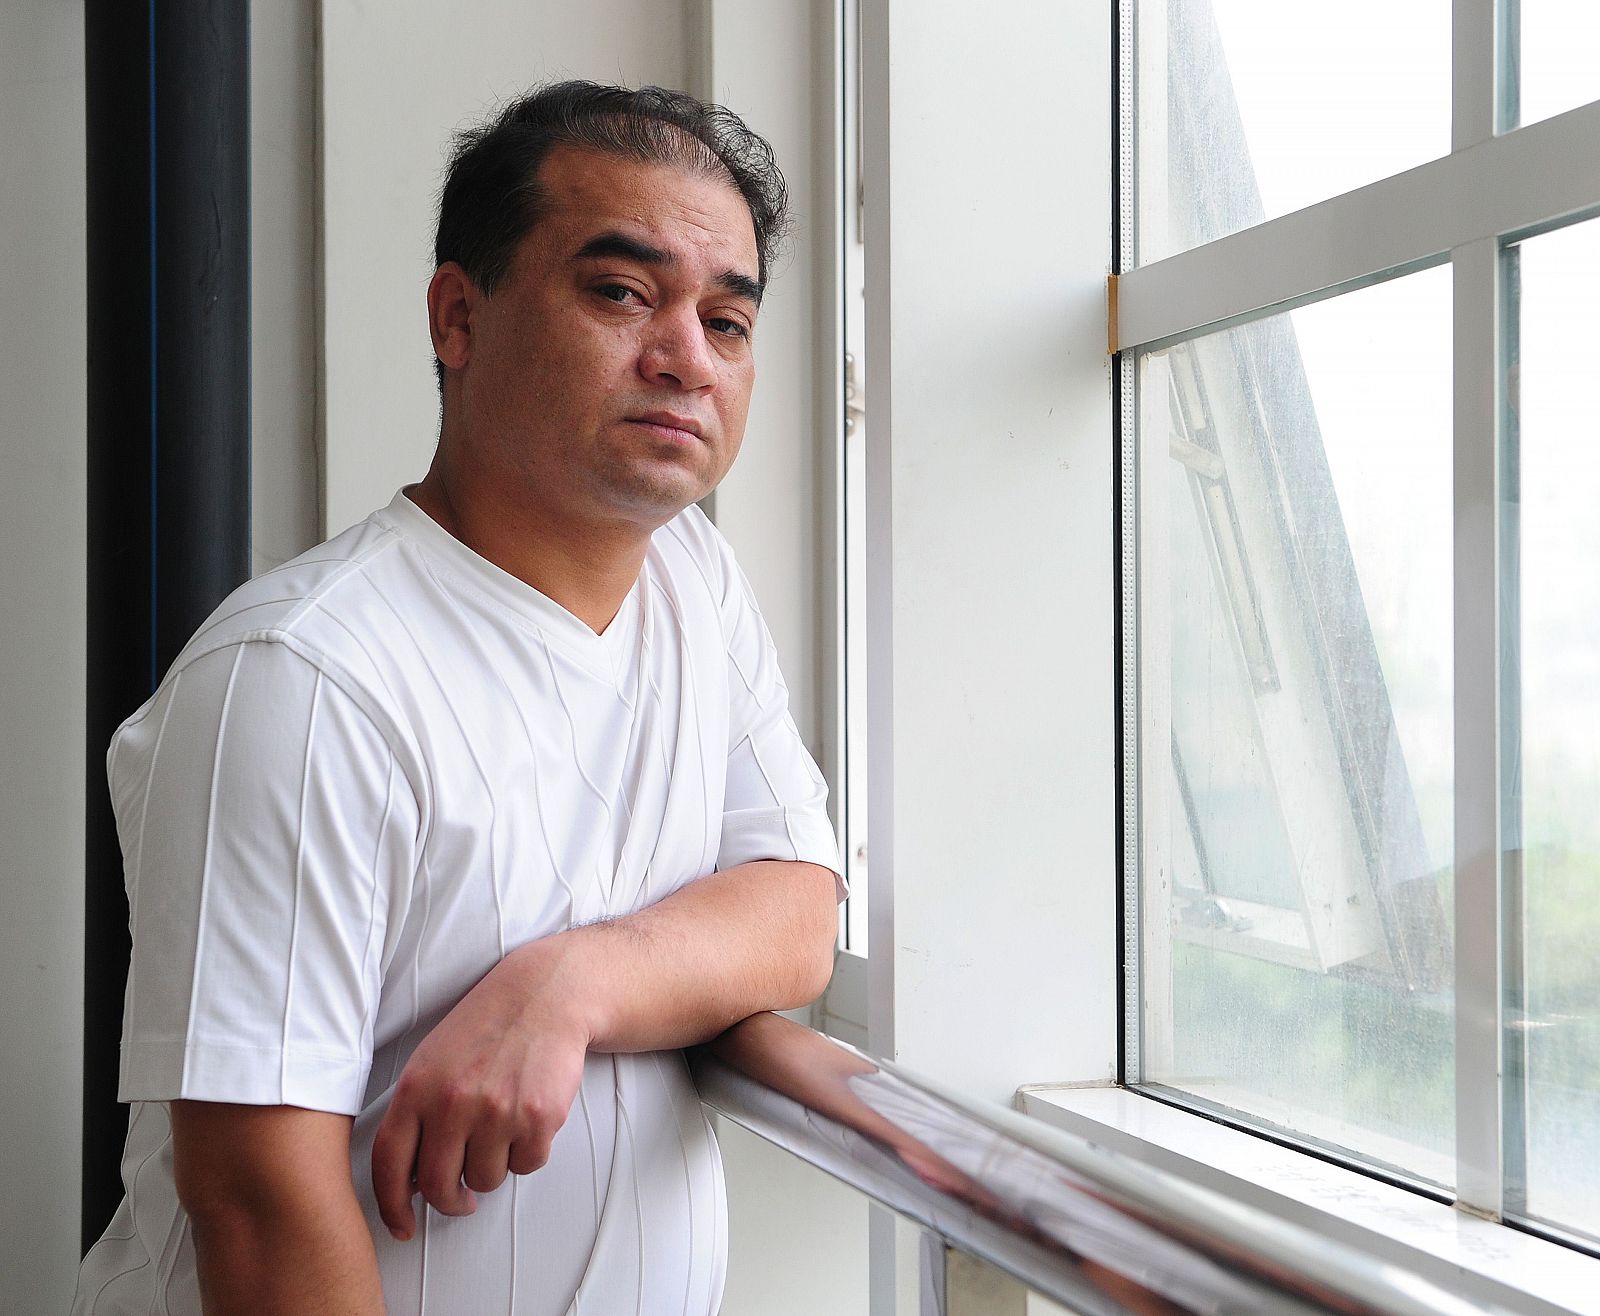 Ilham Tohti en una pausa entre clases en la Universidad de Pekín